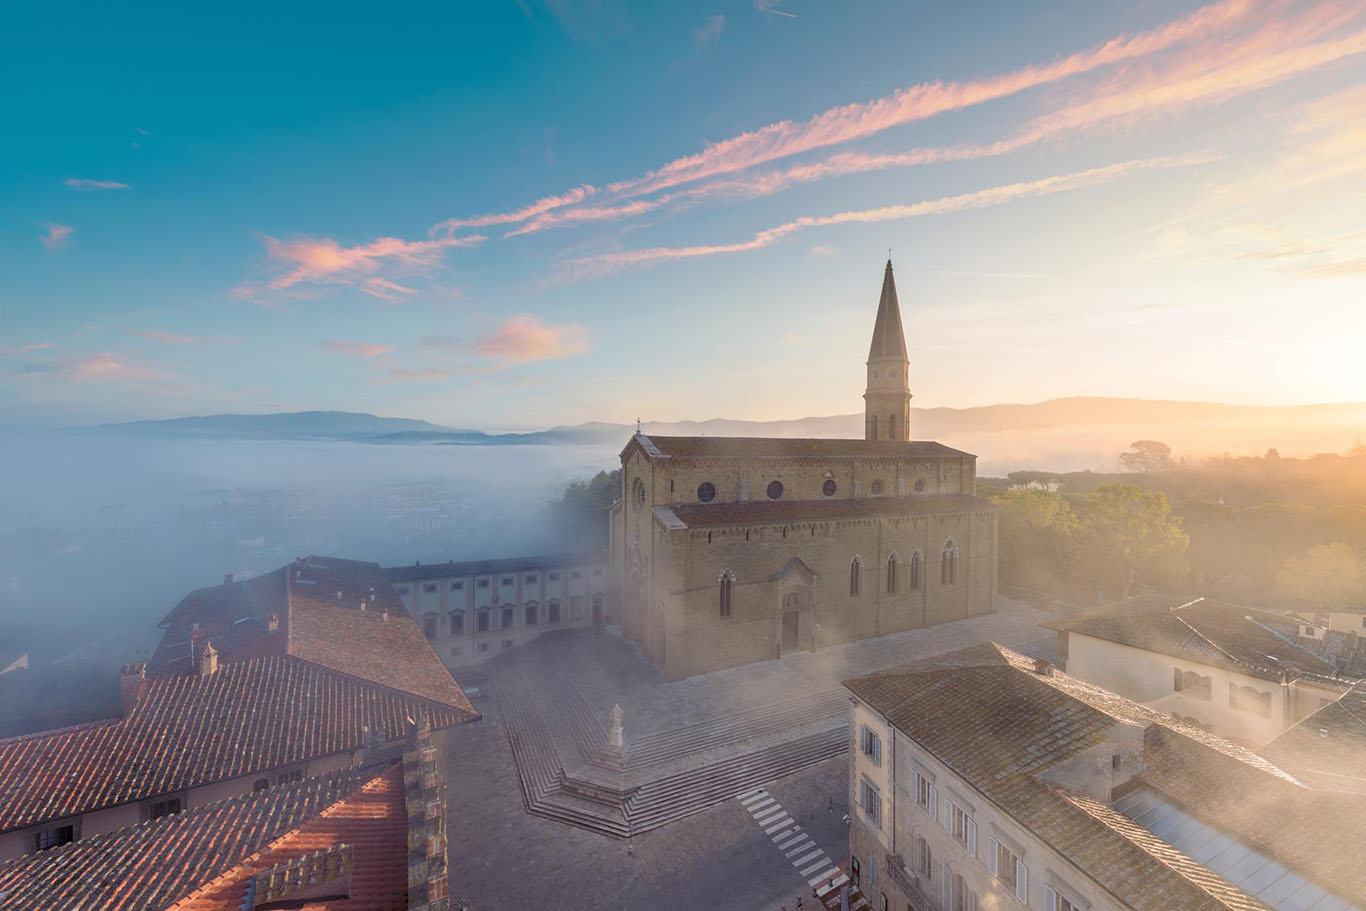 Robert Whitworth racconta la bellezza senza tempo di Arezzo